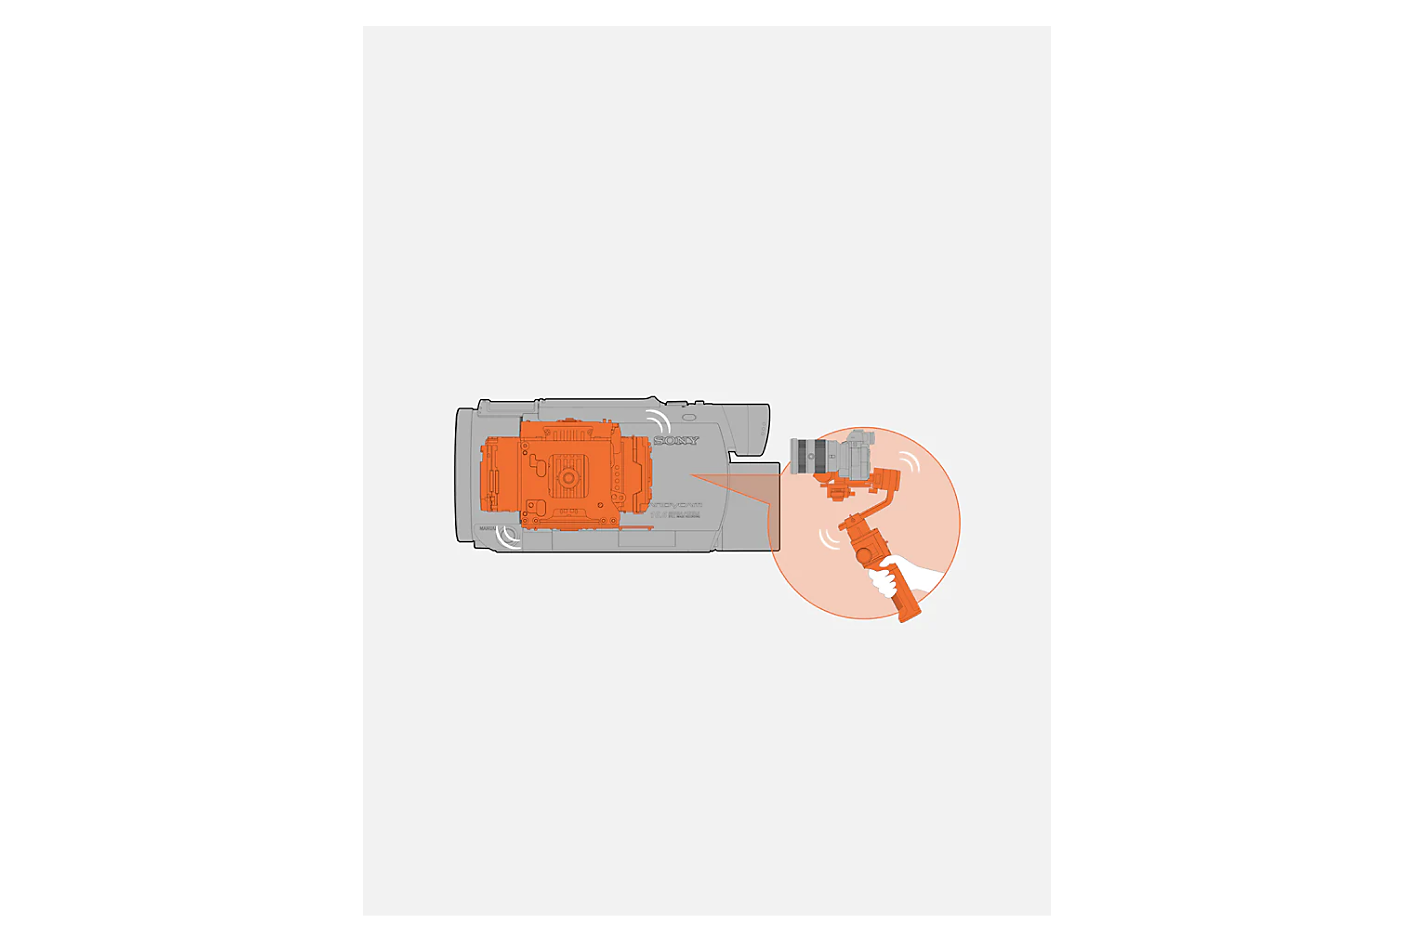 오렌지색 짐벌 메커니즘이 내장된 회색 캠코더의 그래픽